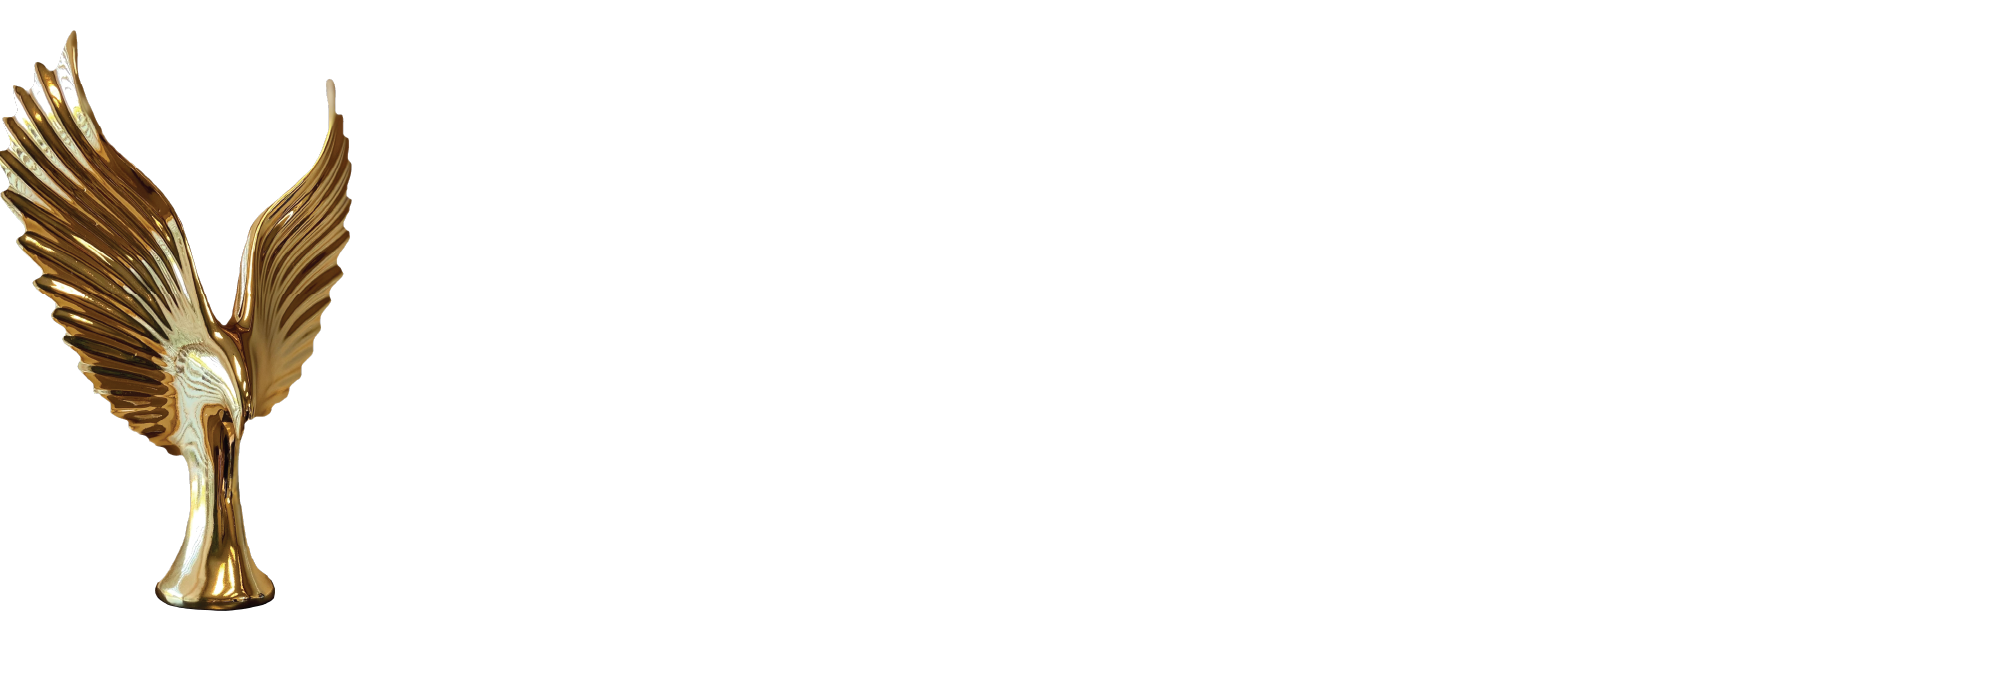 2023 Summit Awards